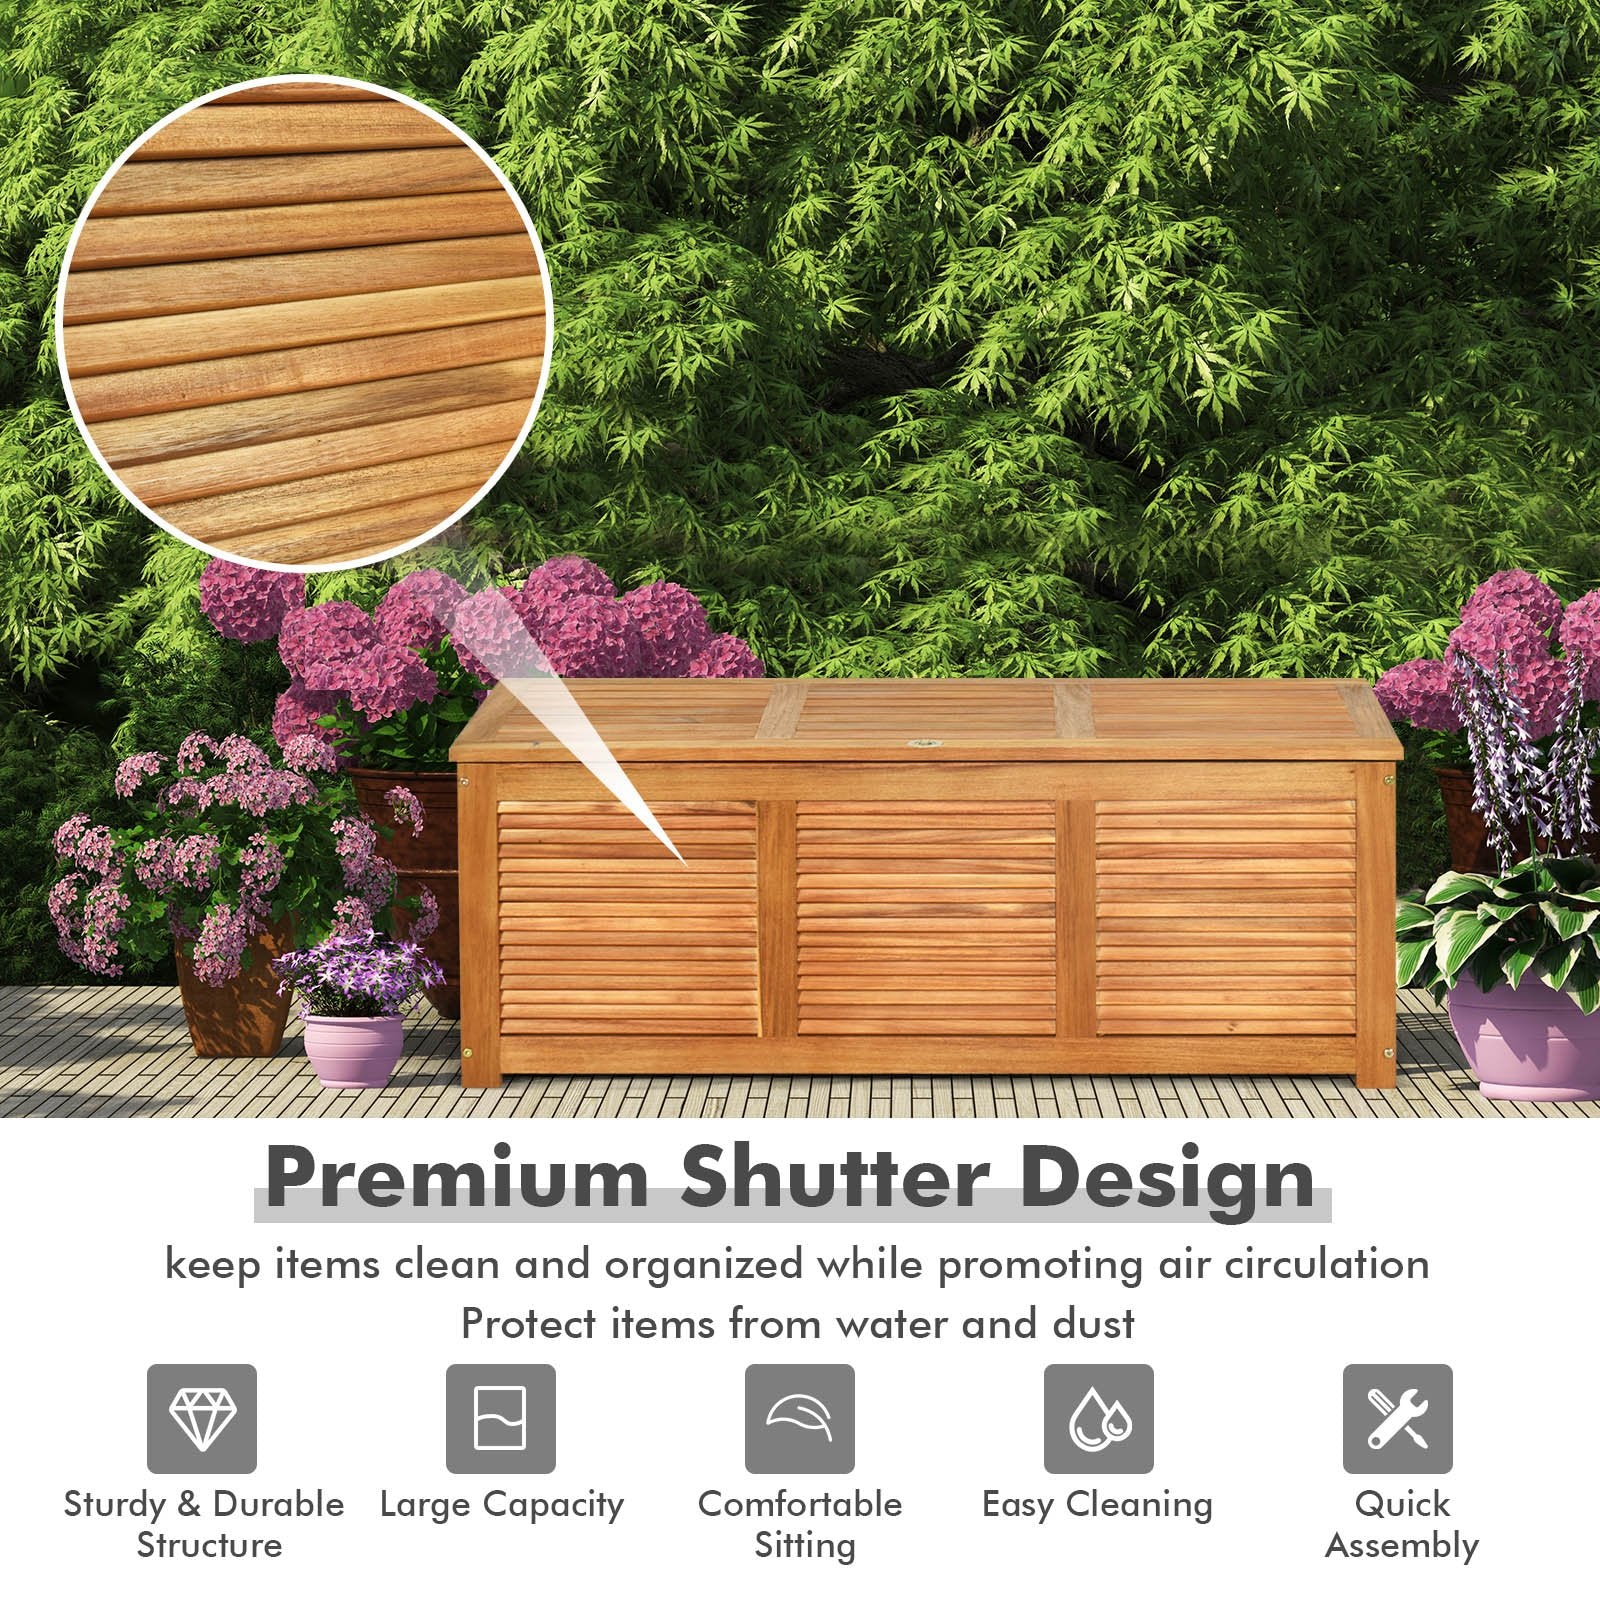 47 Gallon Acacia Wood Storage Bench Box for Patio Garden Deck, Natural - Gallery Canada